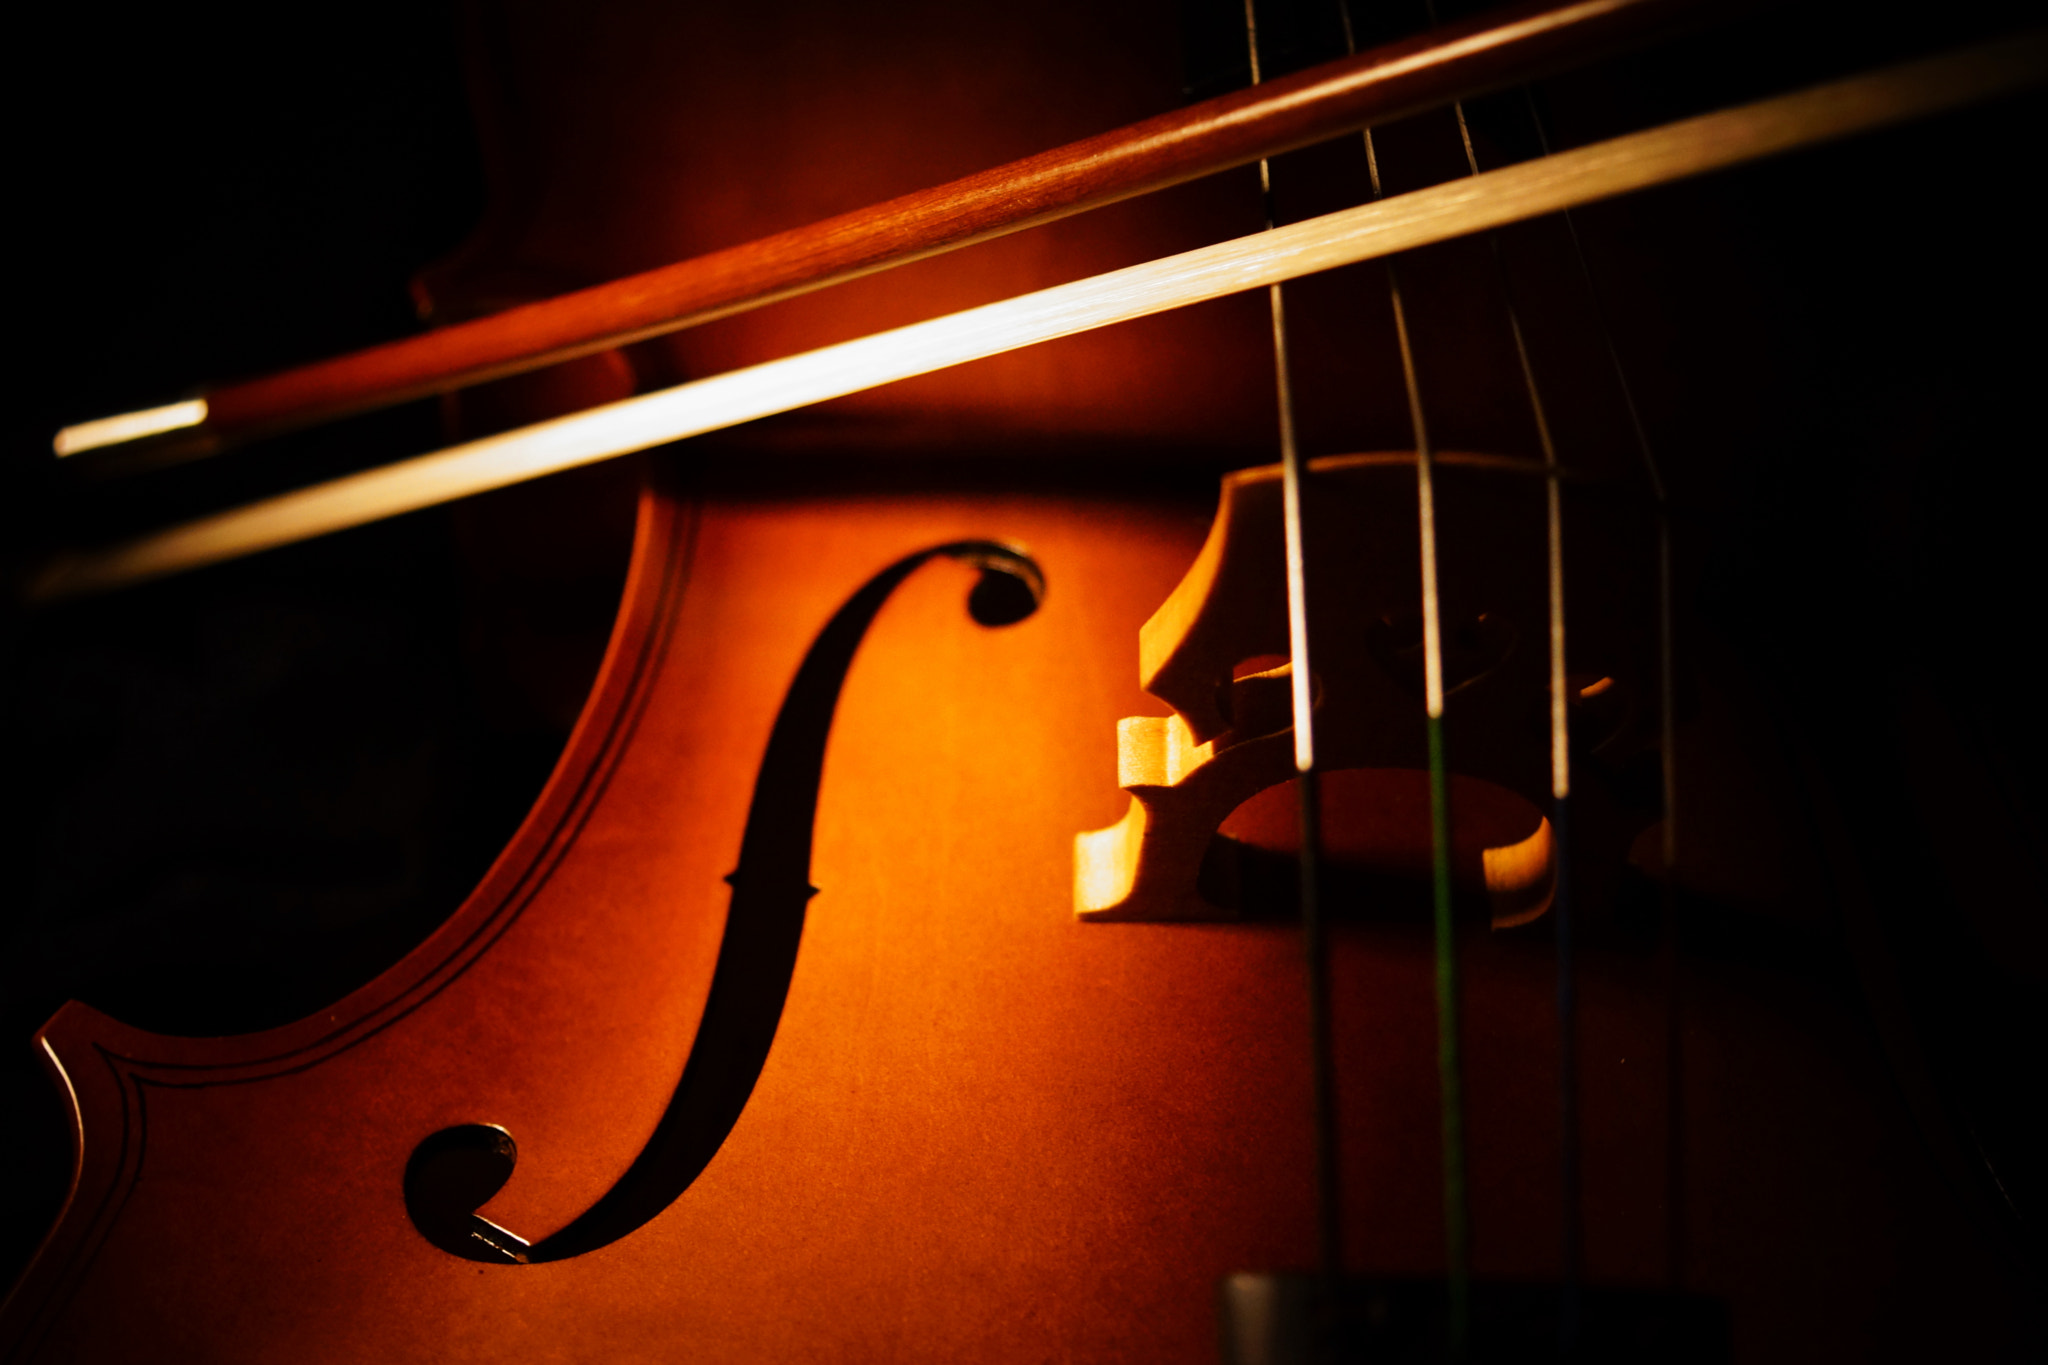 Sony Alpha NEX-7 sample photo. Cello song photography